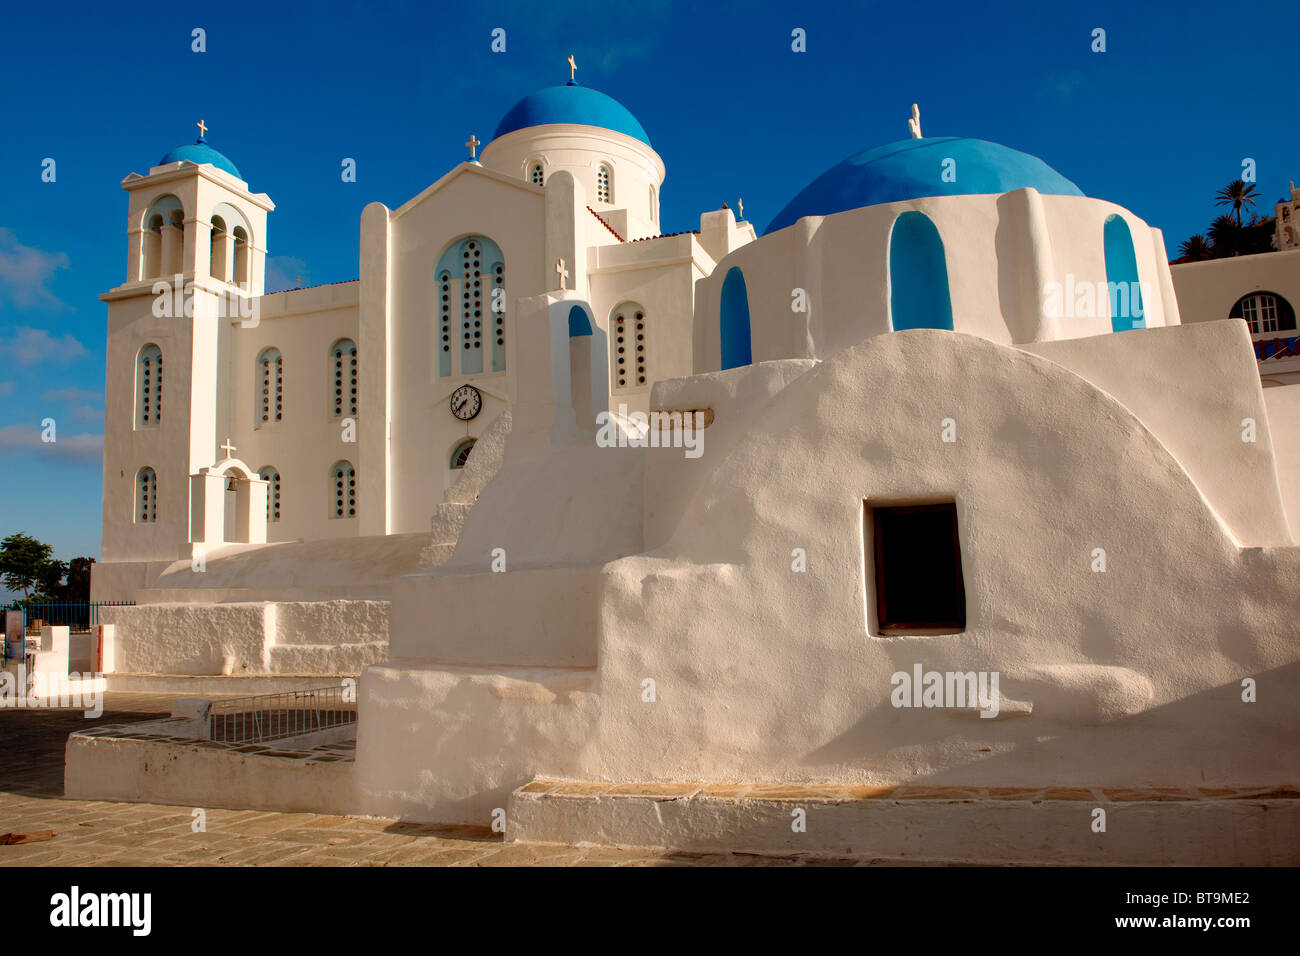 Blaue Kuppel byzantinische griechisch orthodoxe Kapelle der Panaghia Gremiotissa. Chora (Chora), Ios, Kykladen, Griechenland. Stockfoto